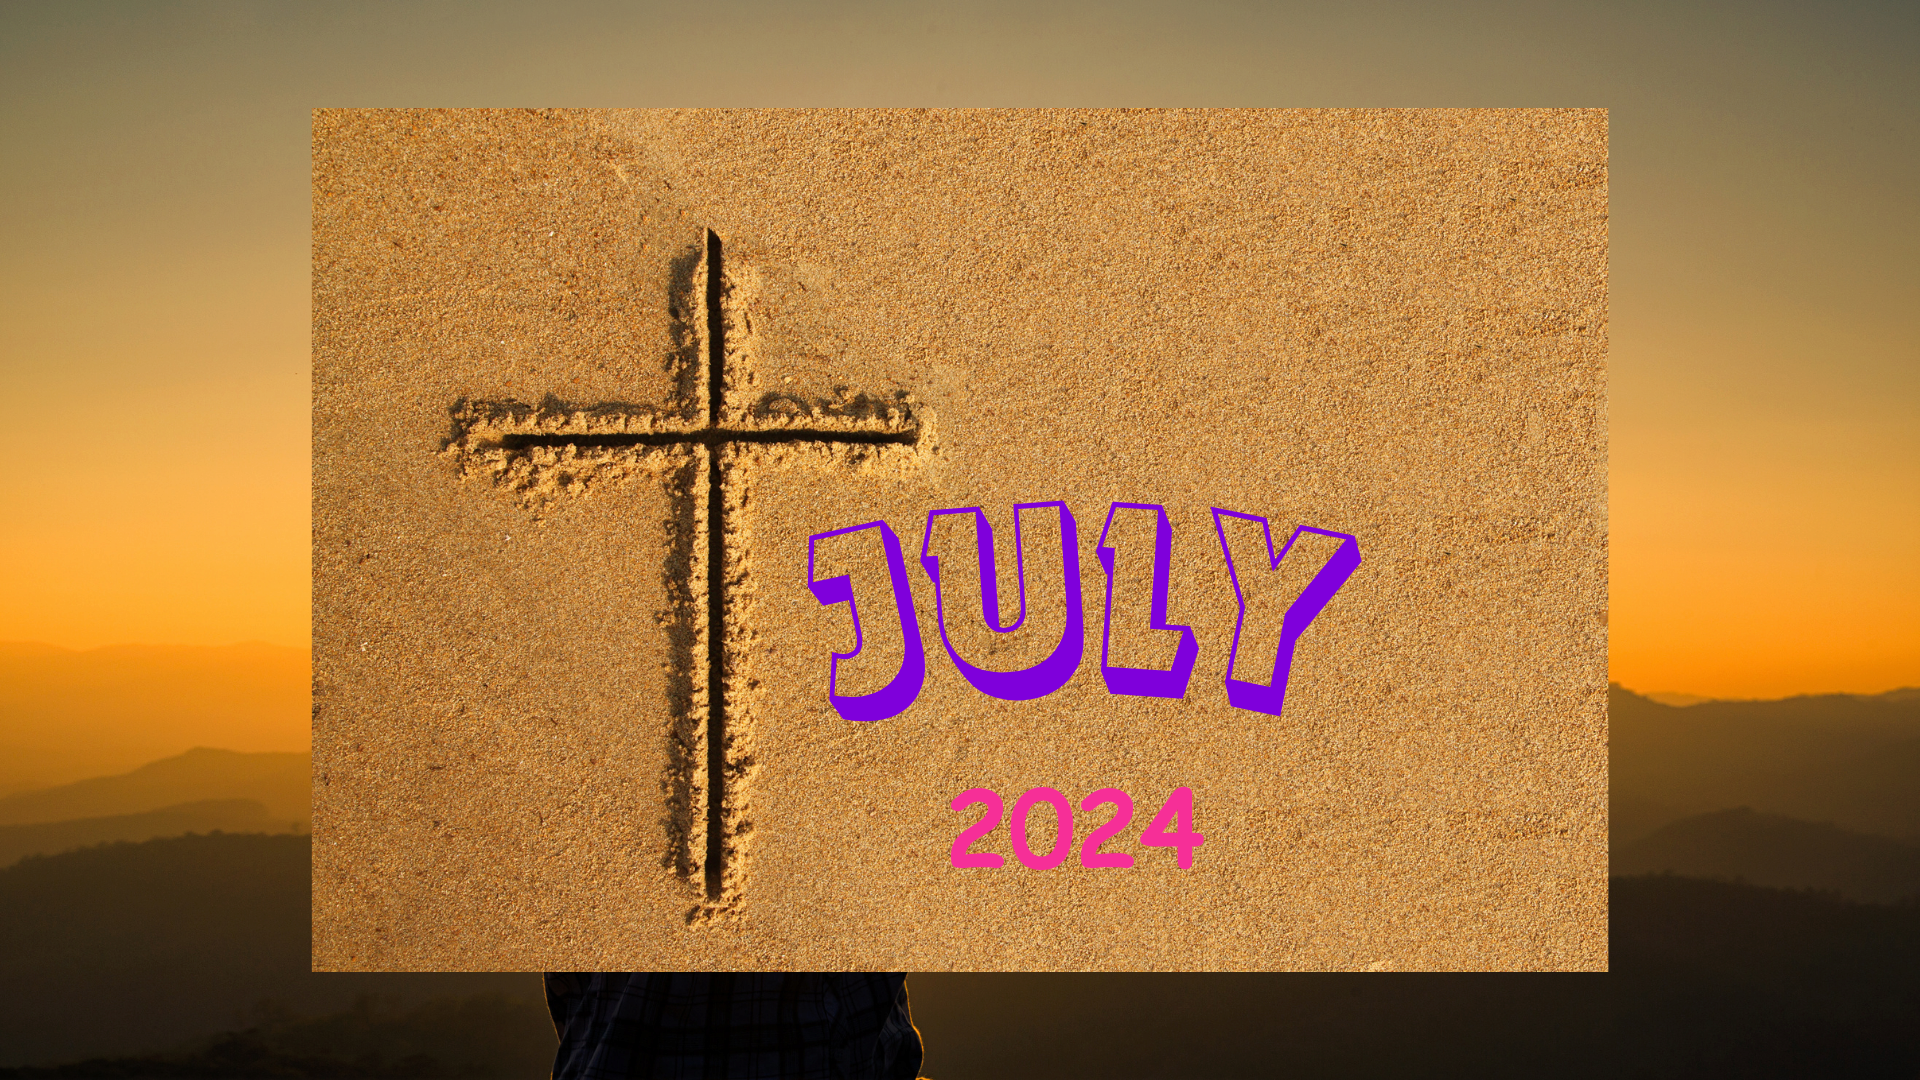 2024 July